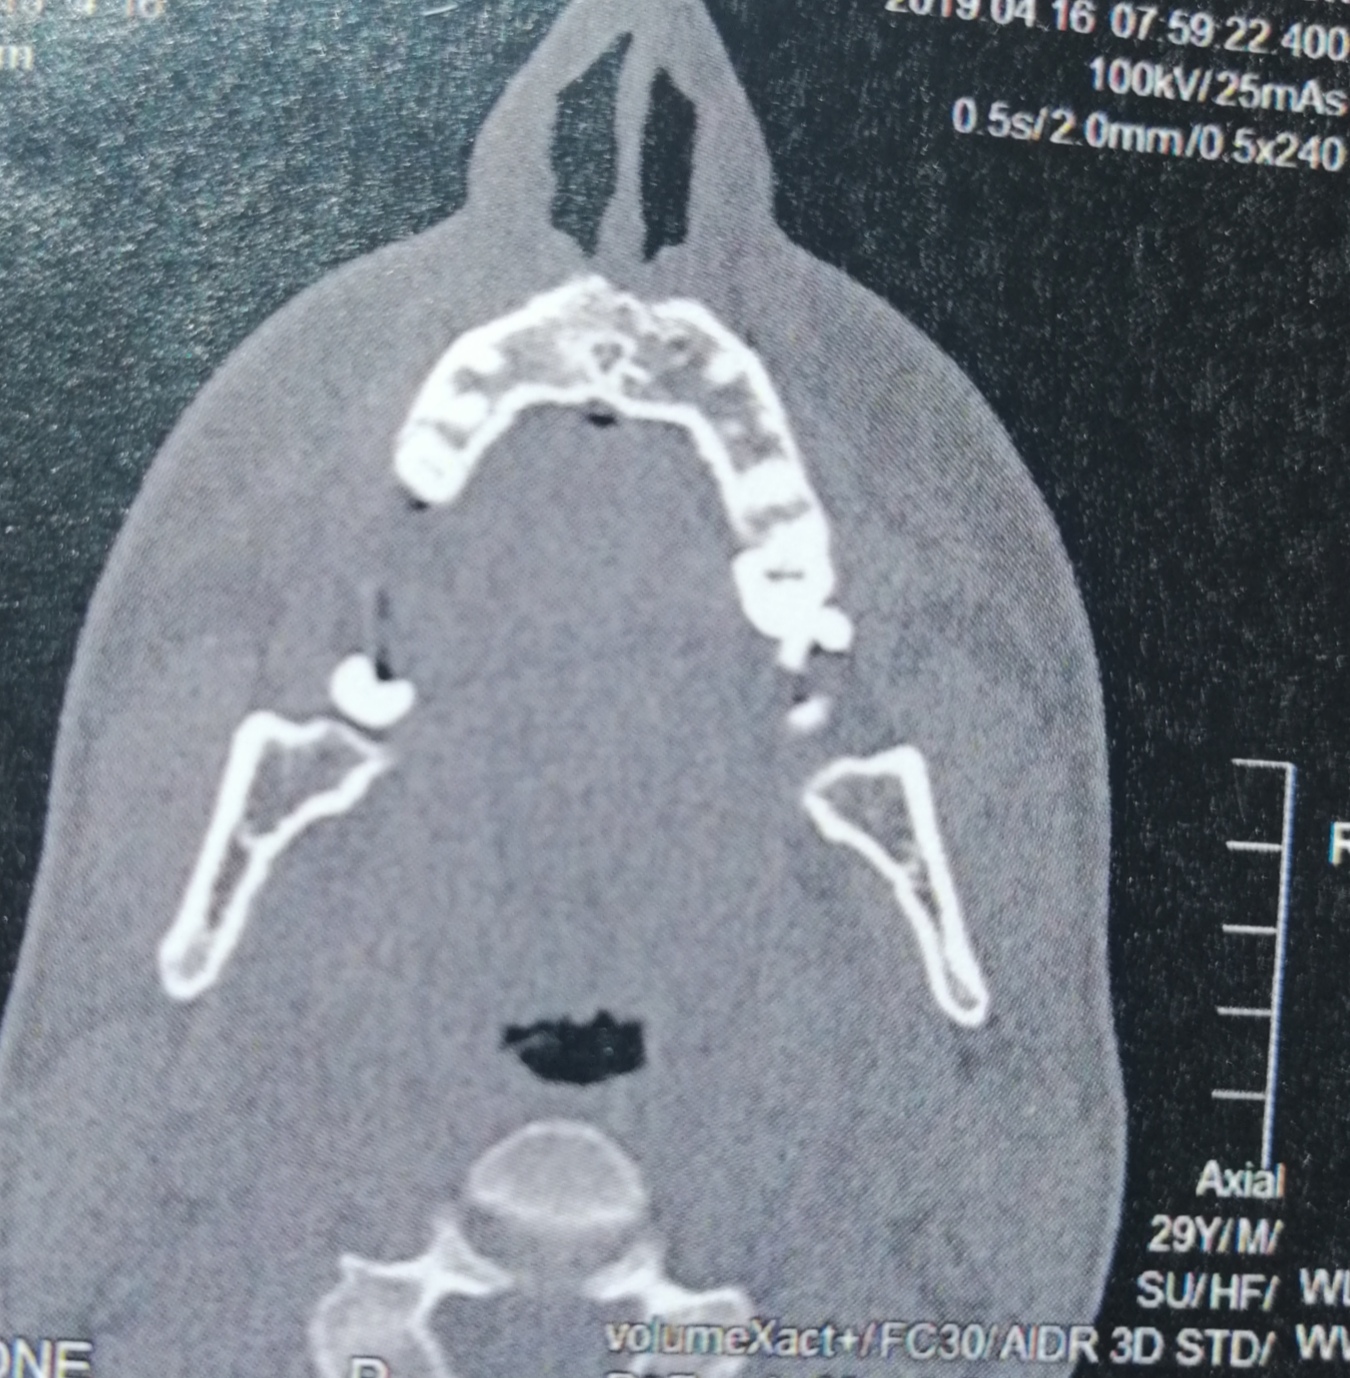 CT der Nasennebenhöhlen /Nase, alles ok? (kernspintomographie)